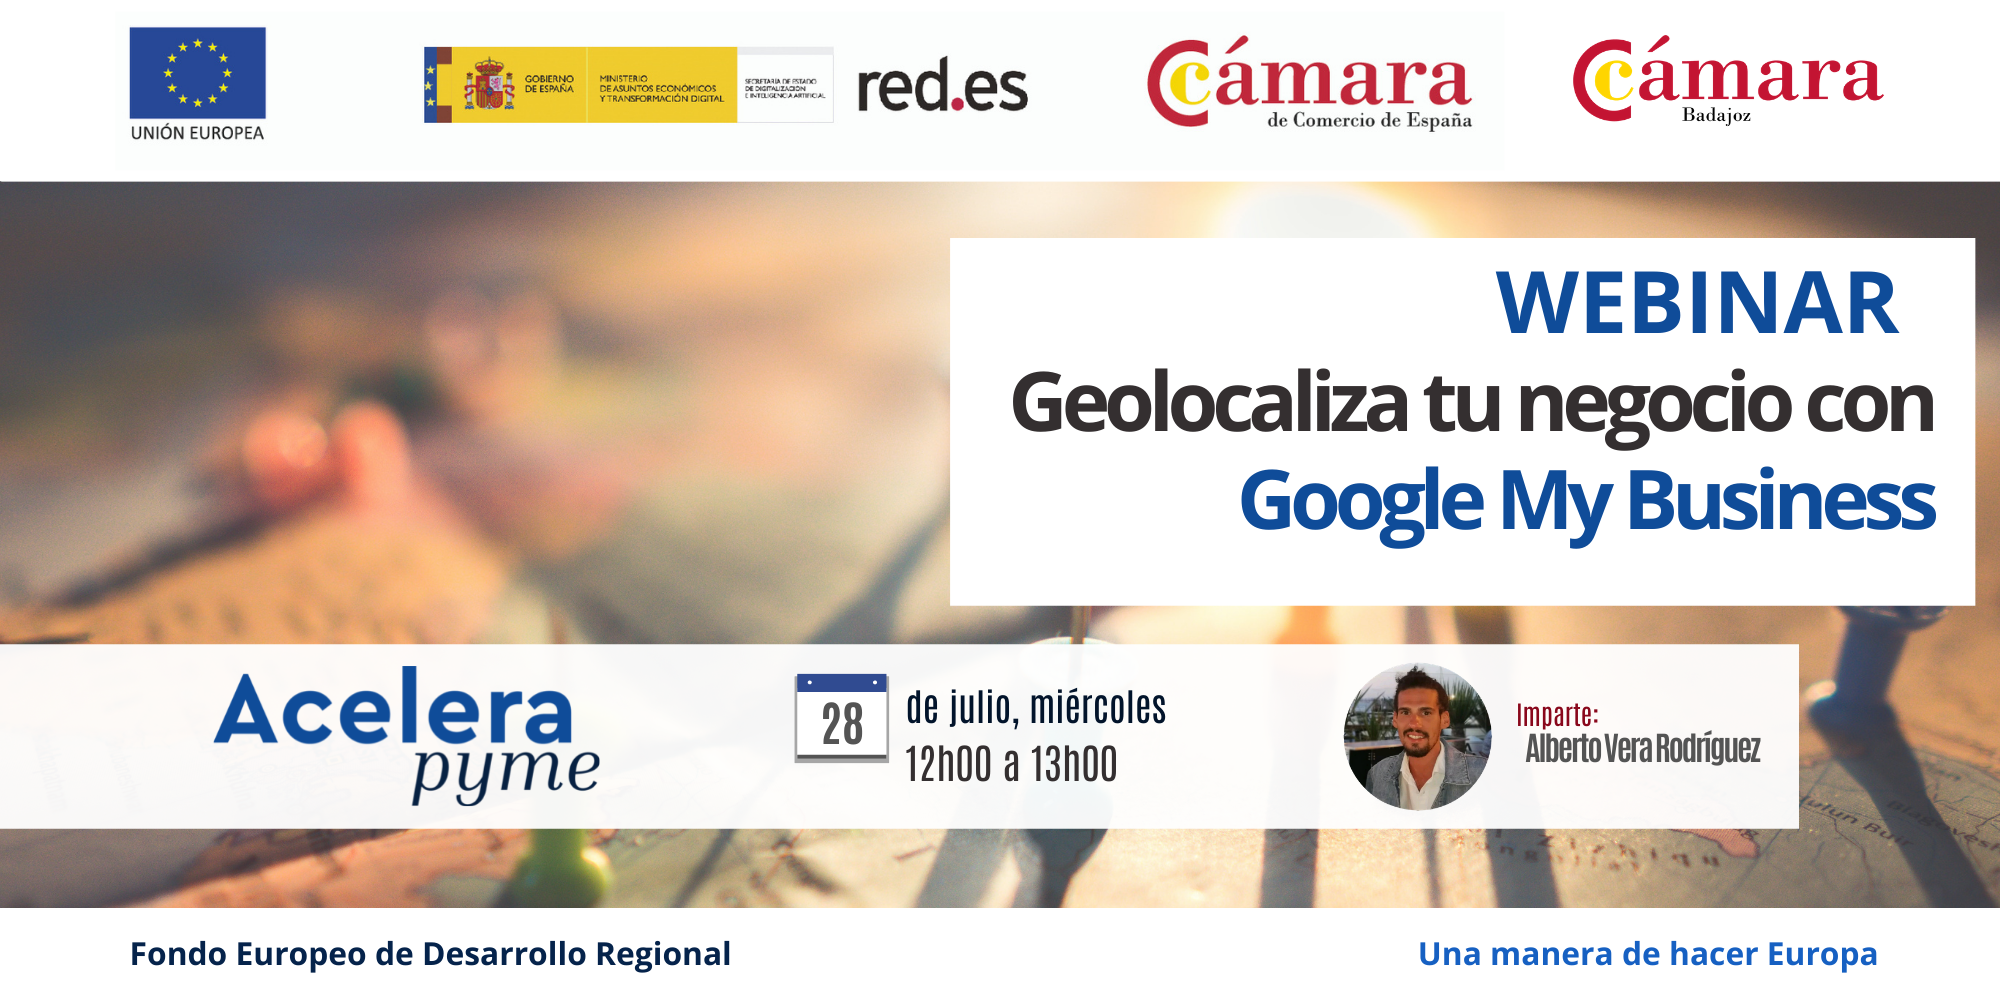 WEBINAR - Geolocaliza tu negocio con Google My Business